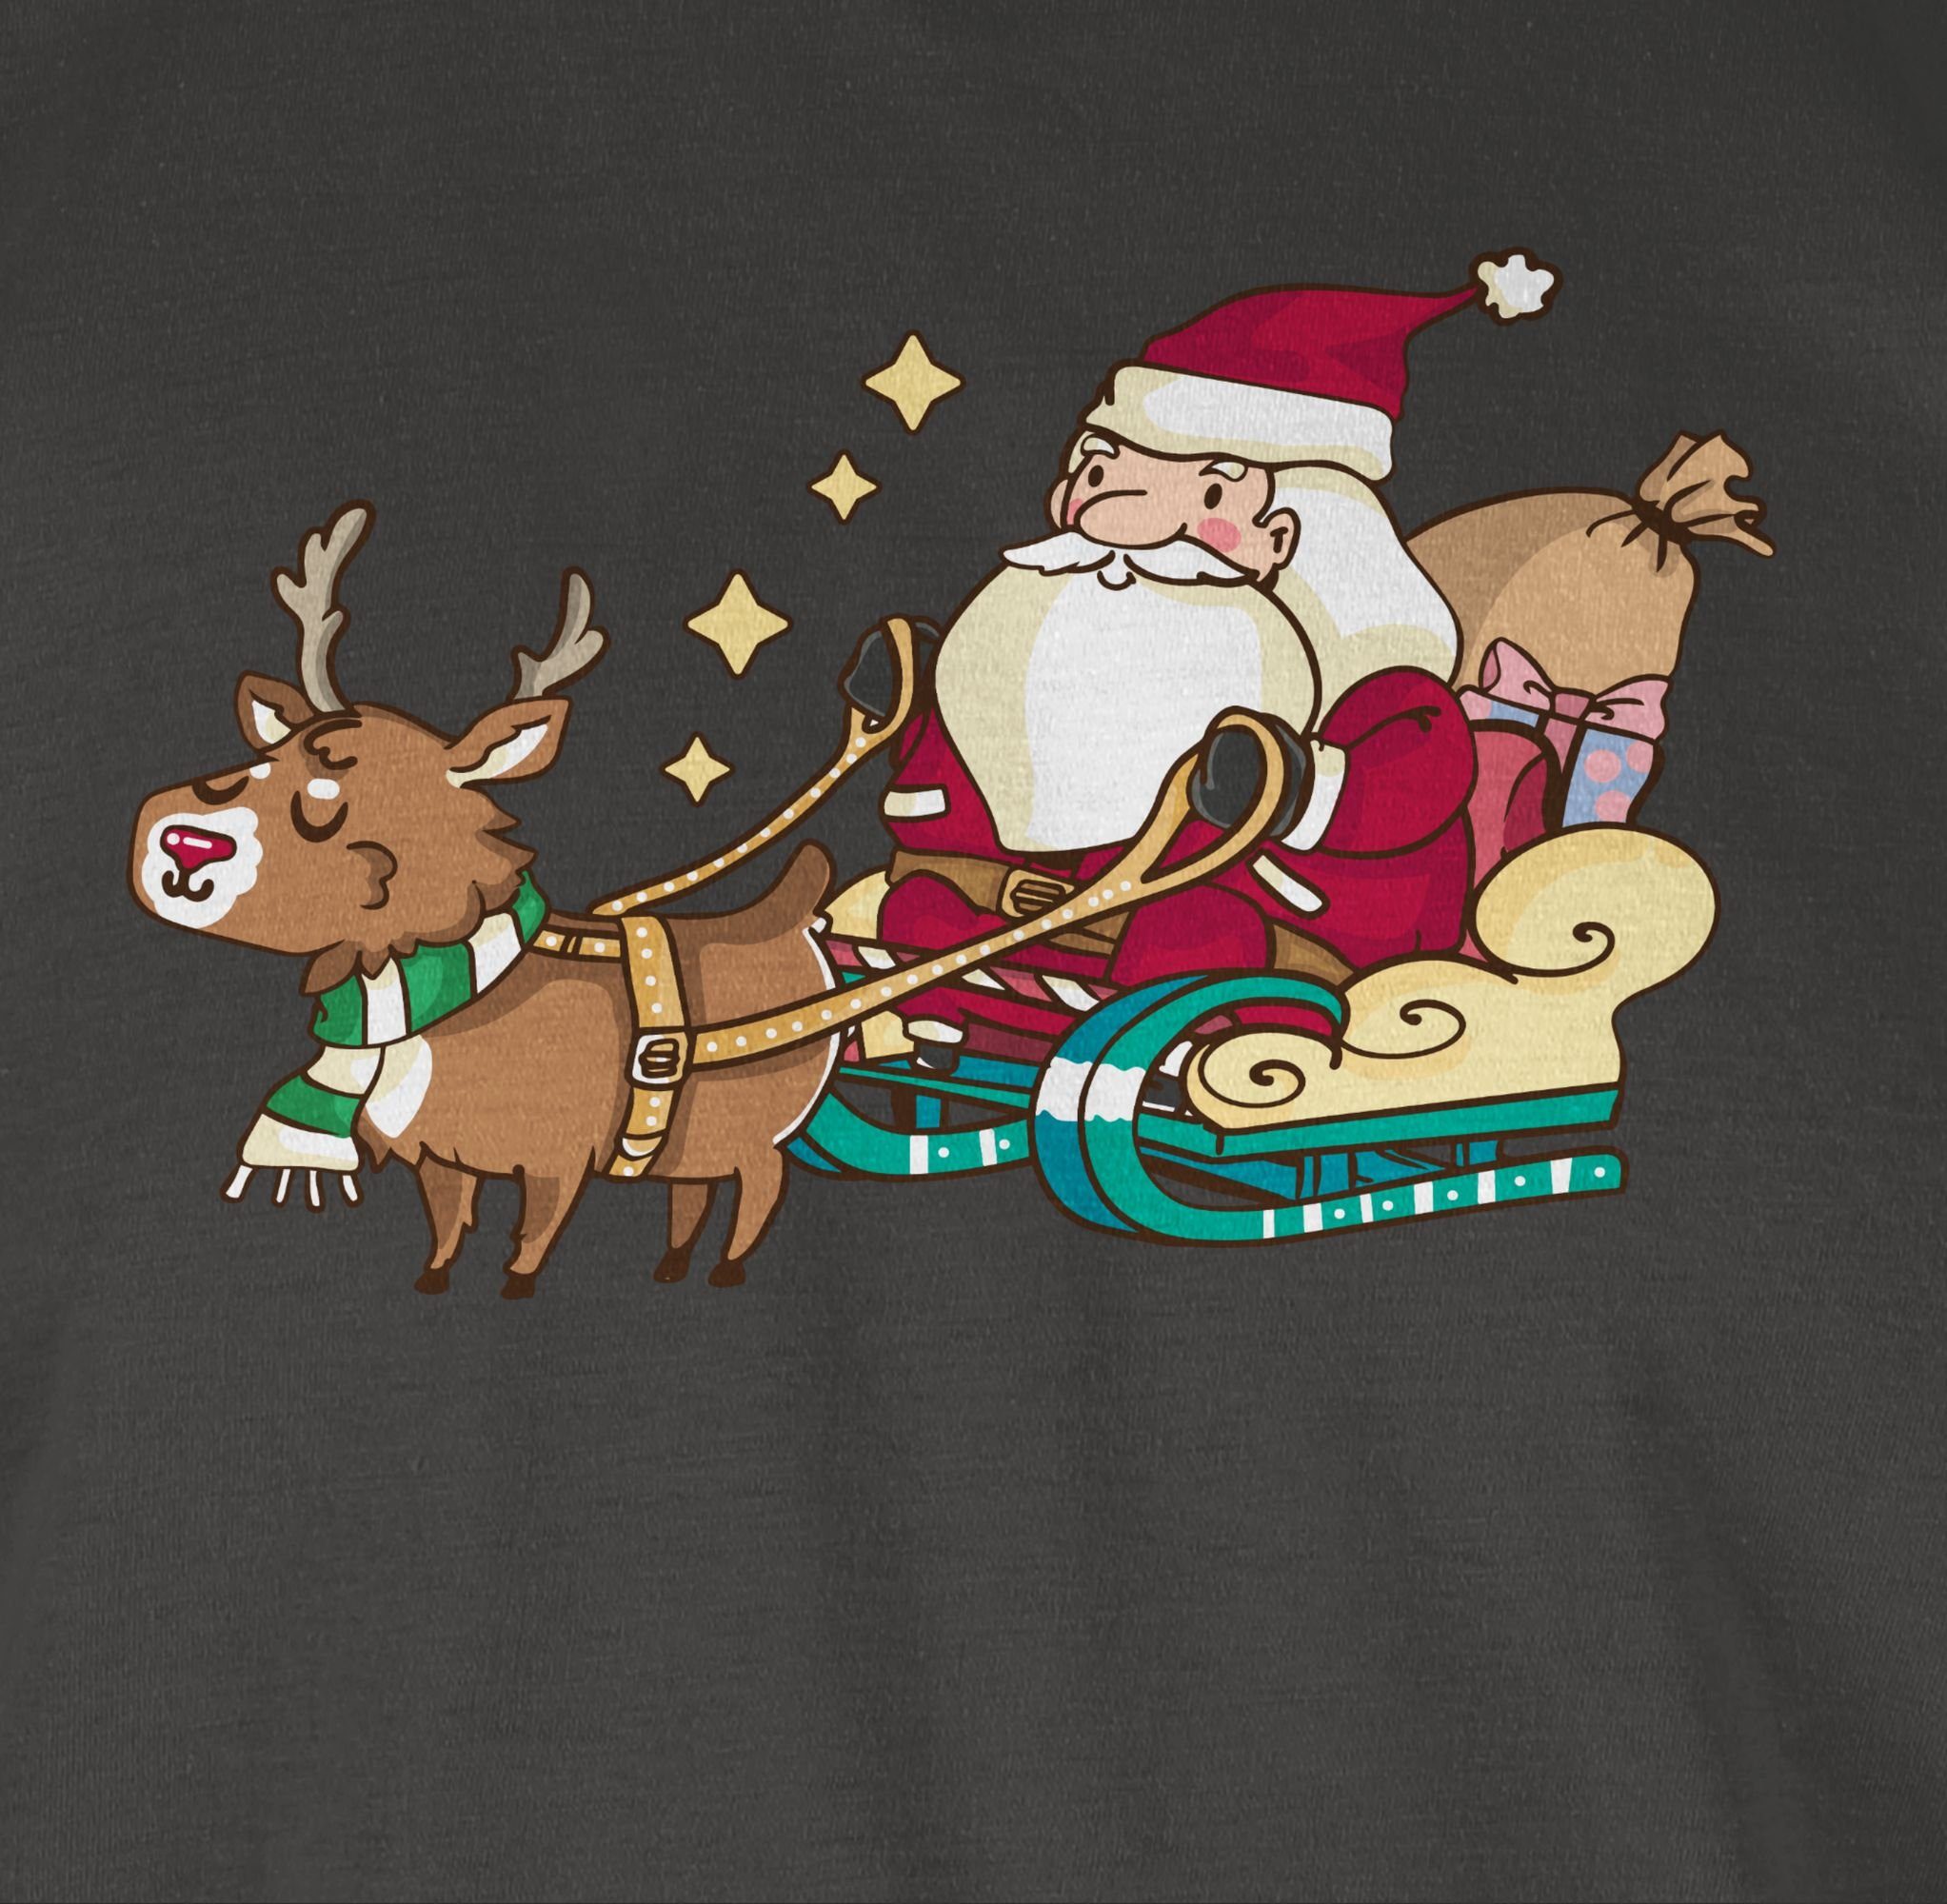 Shirtracer T-Shirt Weihnachtsmann Kleidung mit Weihachten 3 Dunkelgrau Rentier